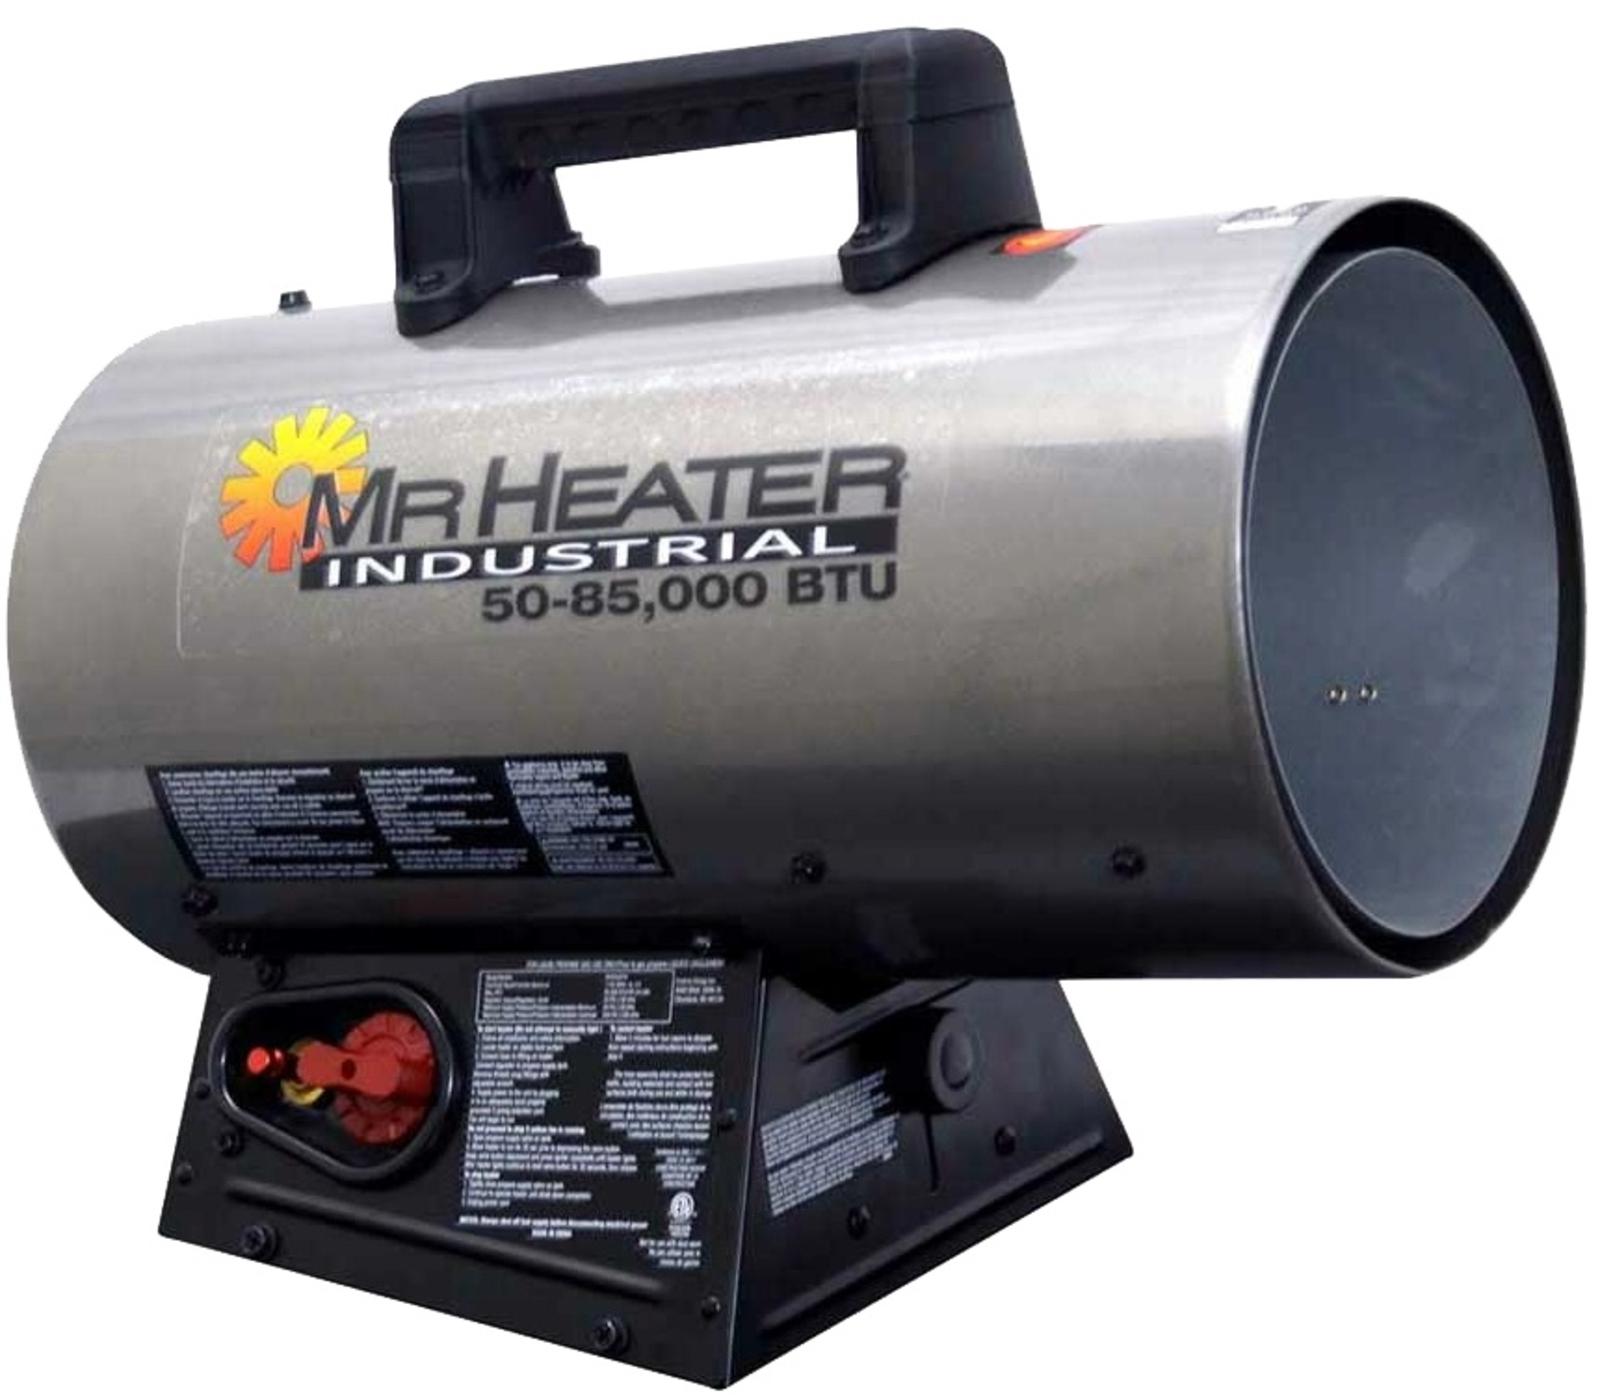 Mr. Heater 50,000-85,000 BTU Forced Air Propane Heater